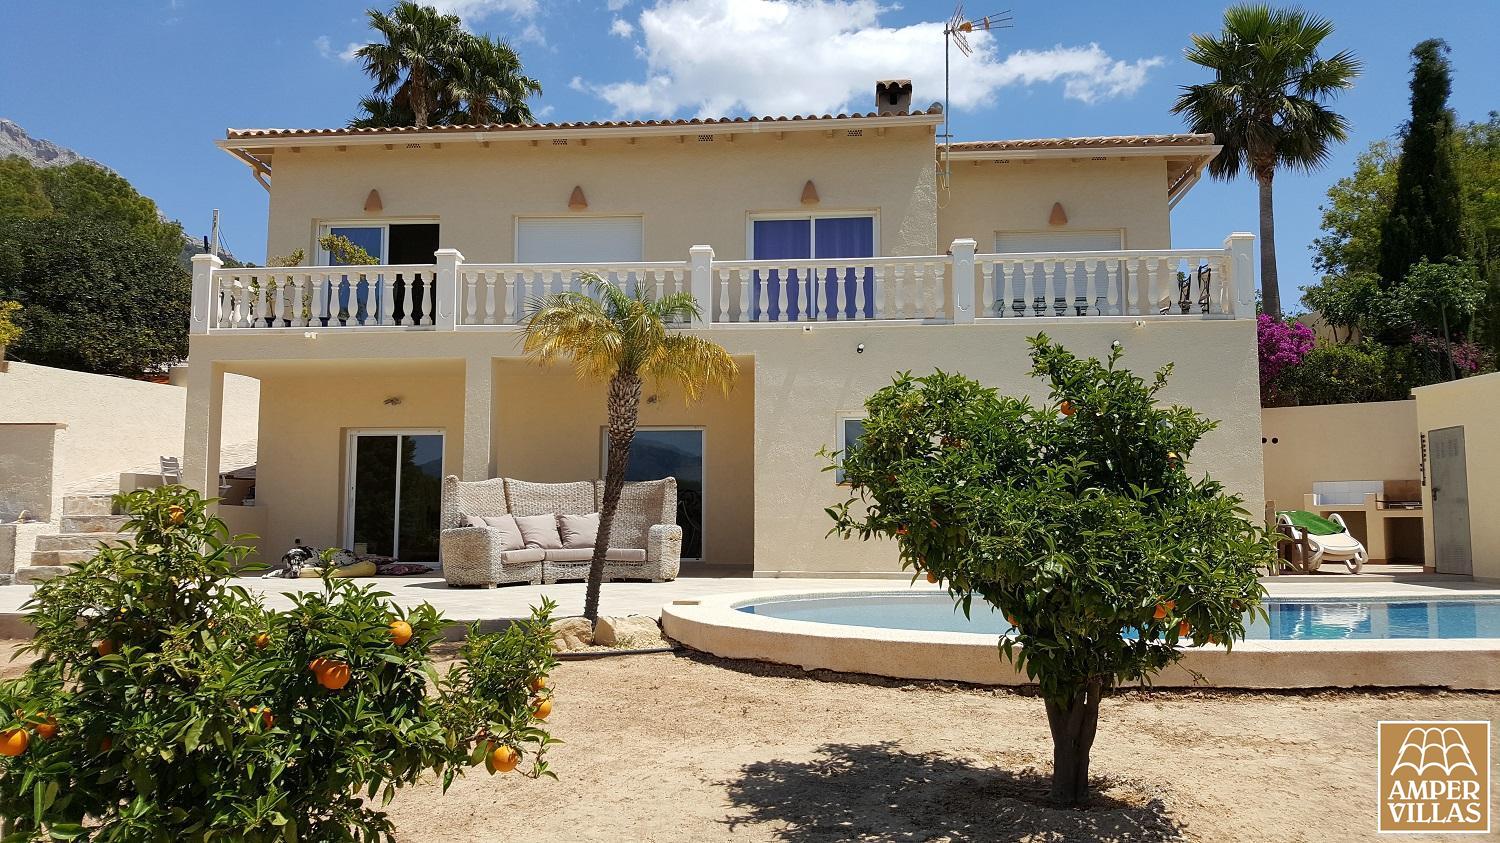 Modern villa with 2 separate apartments near the center of Altea la Vella.